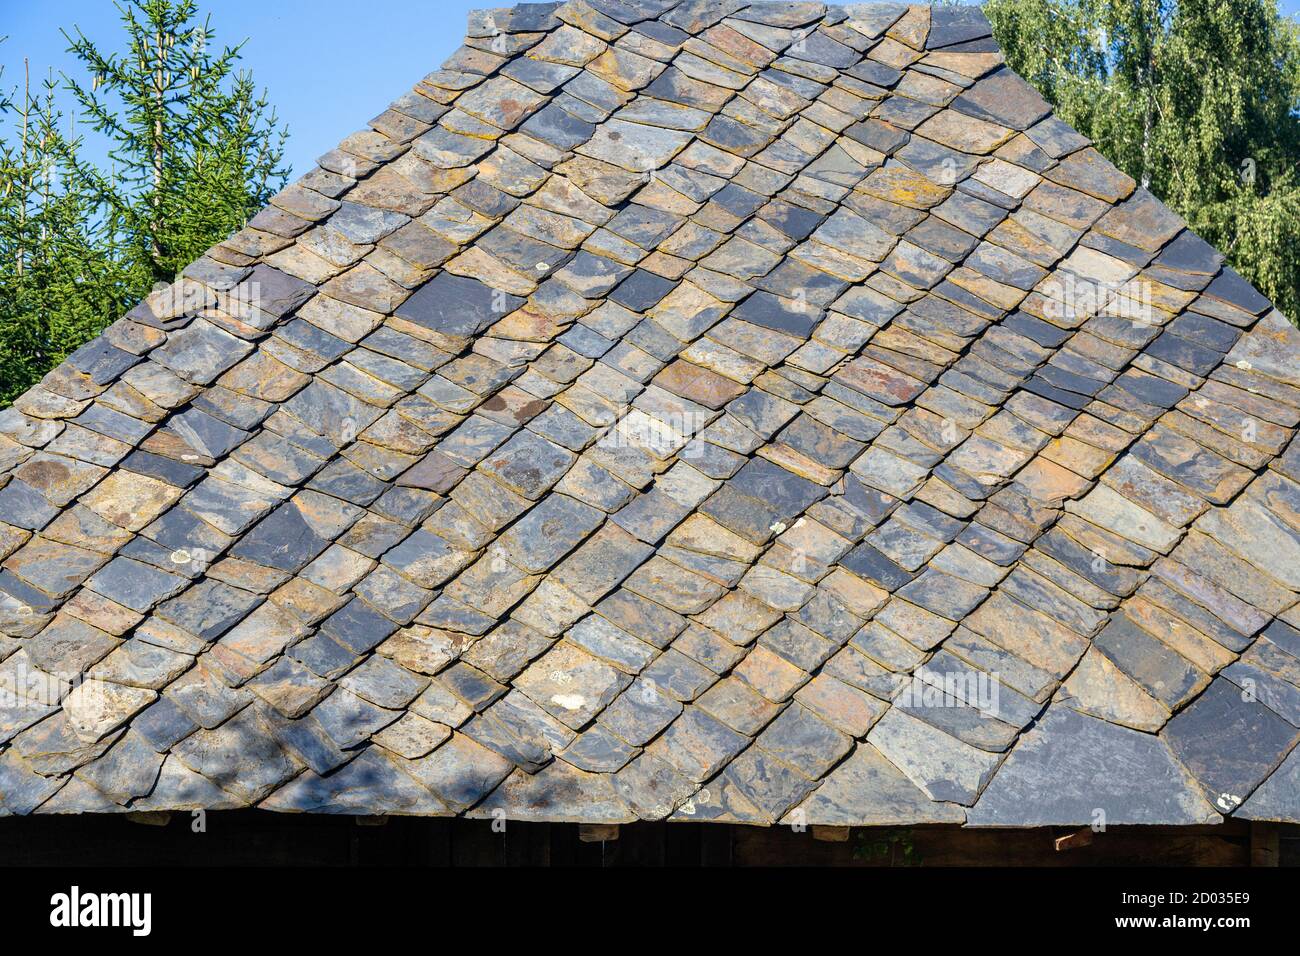 Ancien toit traditionnel en ardoise au village ethno de Sirogojno, Serbie. Toit en pierres coupées. Banque D'Images